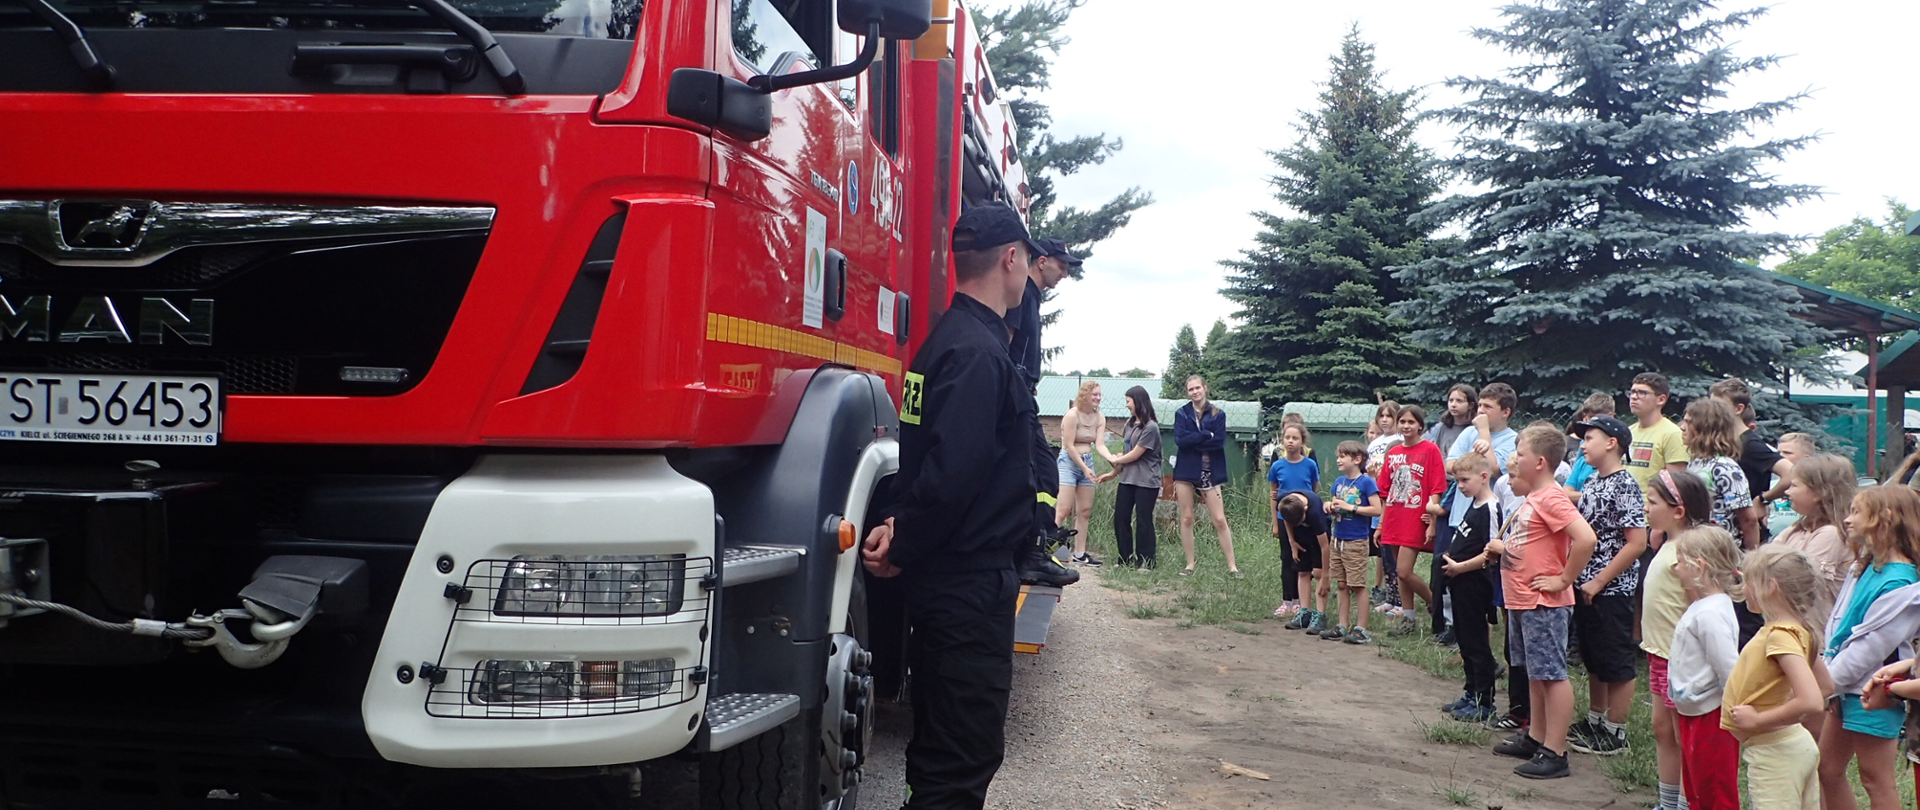 Po lewej stronie stoi wóz bojowy Państwowej Straży Pożarnej oraz strażacy skierowani w stronę grupki małych dzieci stojących po prawej stronie zdjęcia